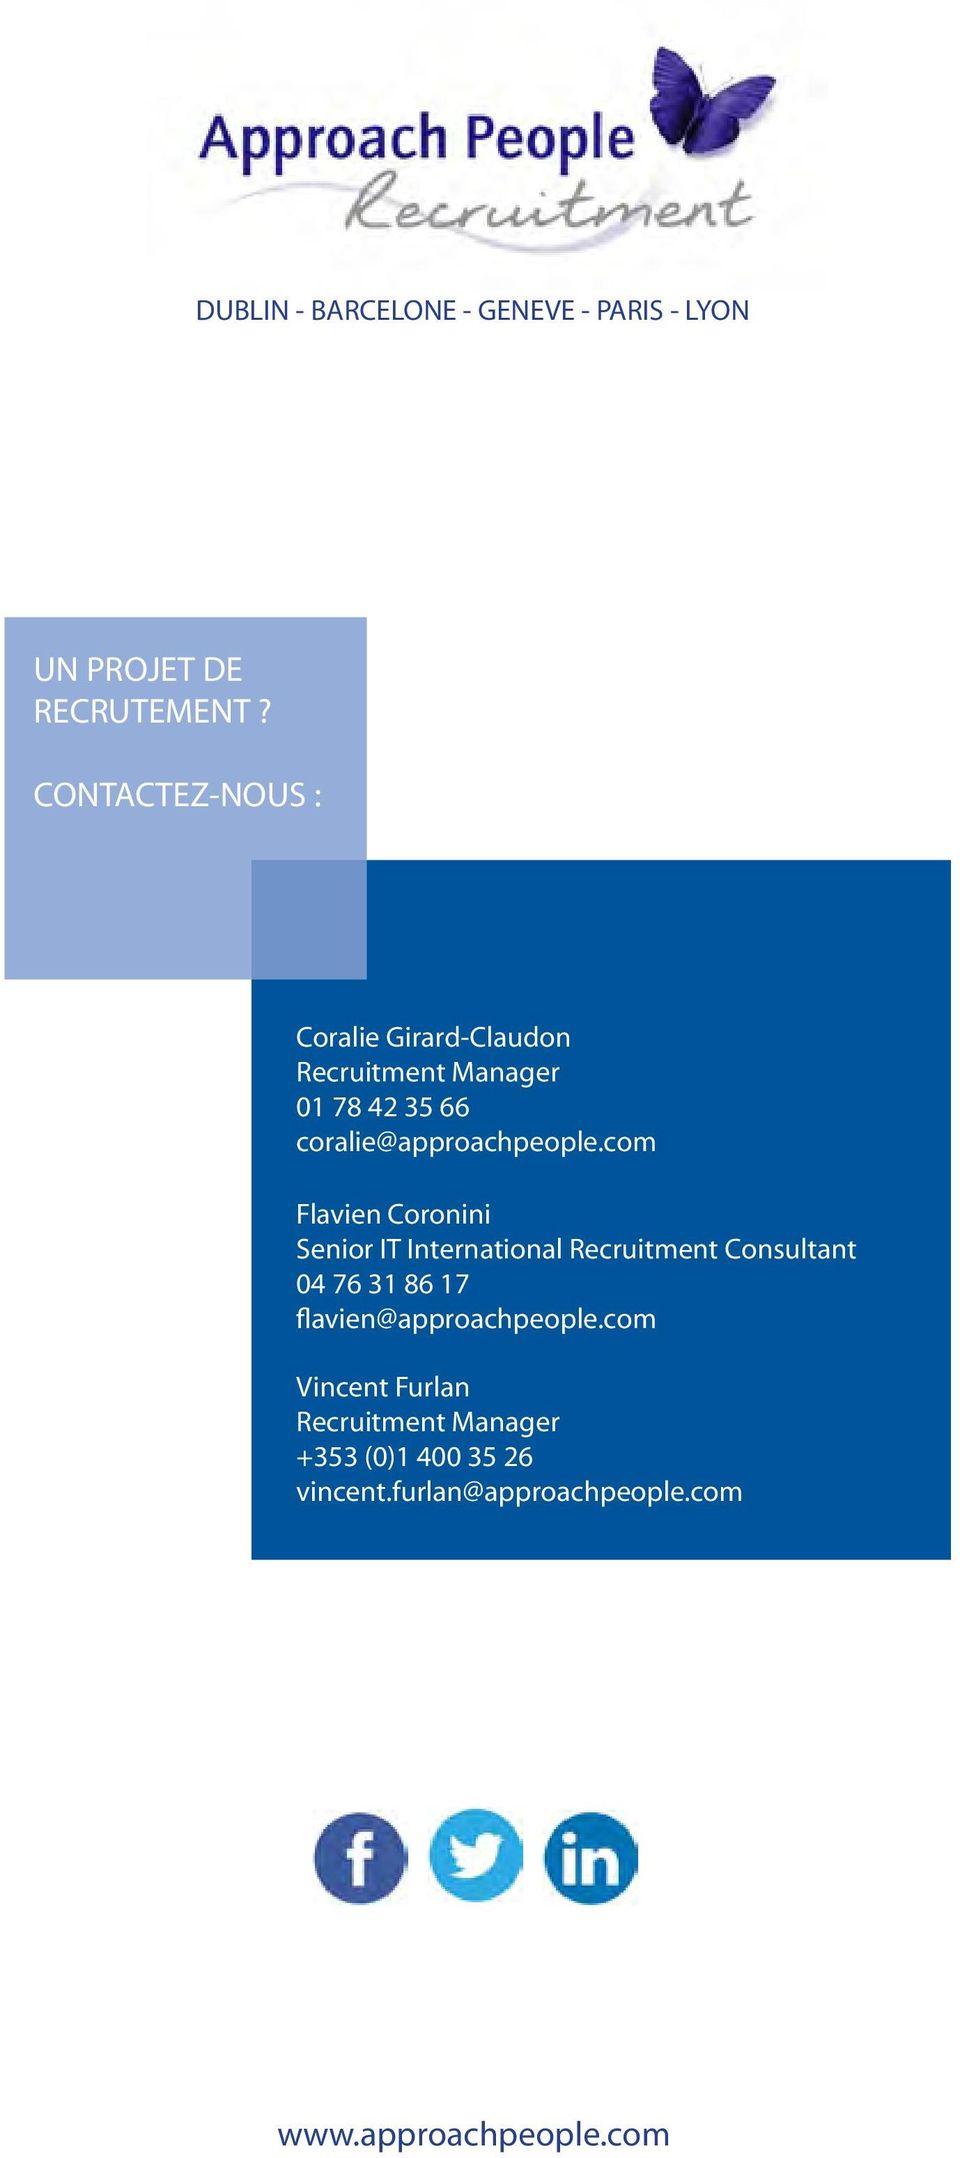 com Flavien Coronini Senior IT International Recruitment Consultant 04 76 31 86 17